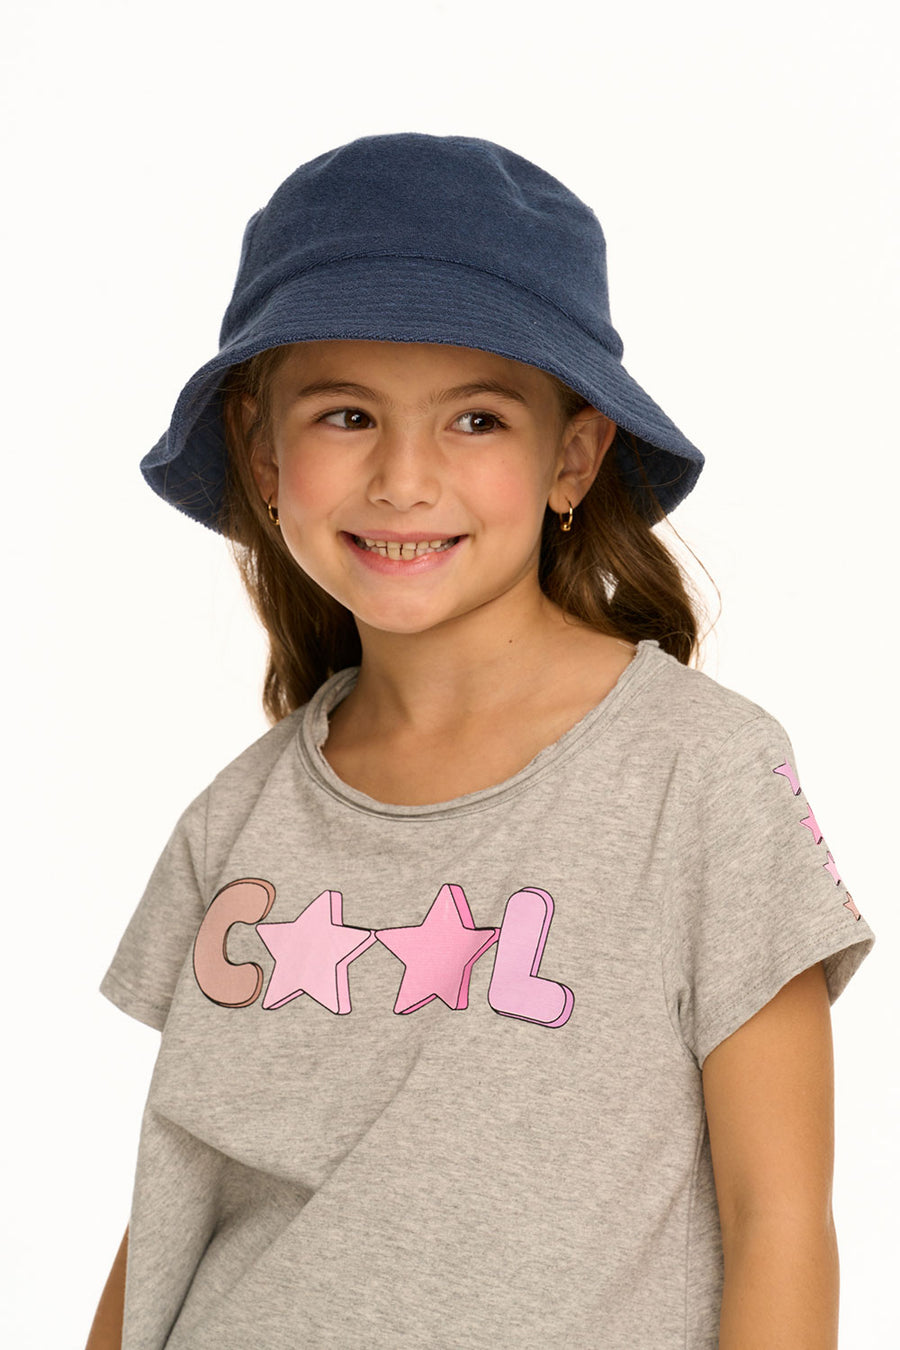 Owen Navy Blue Bucket Hat GIRLS chaserbrand